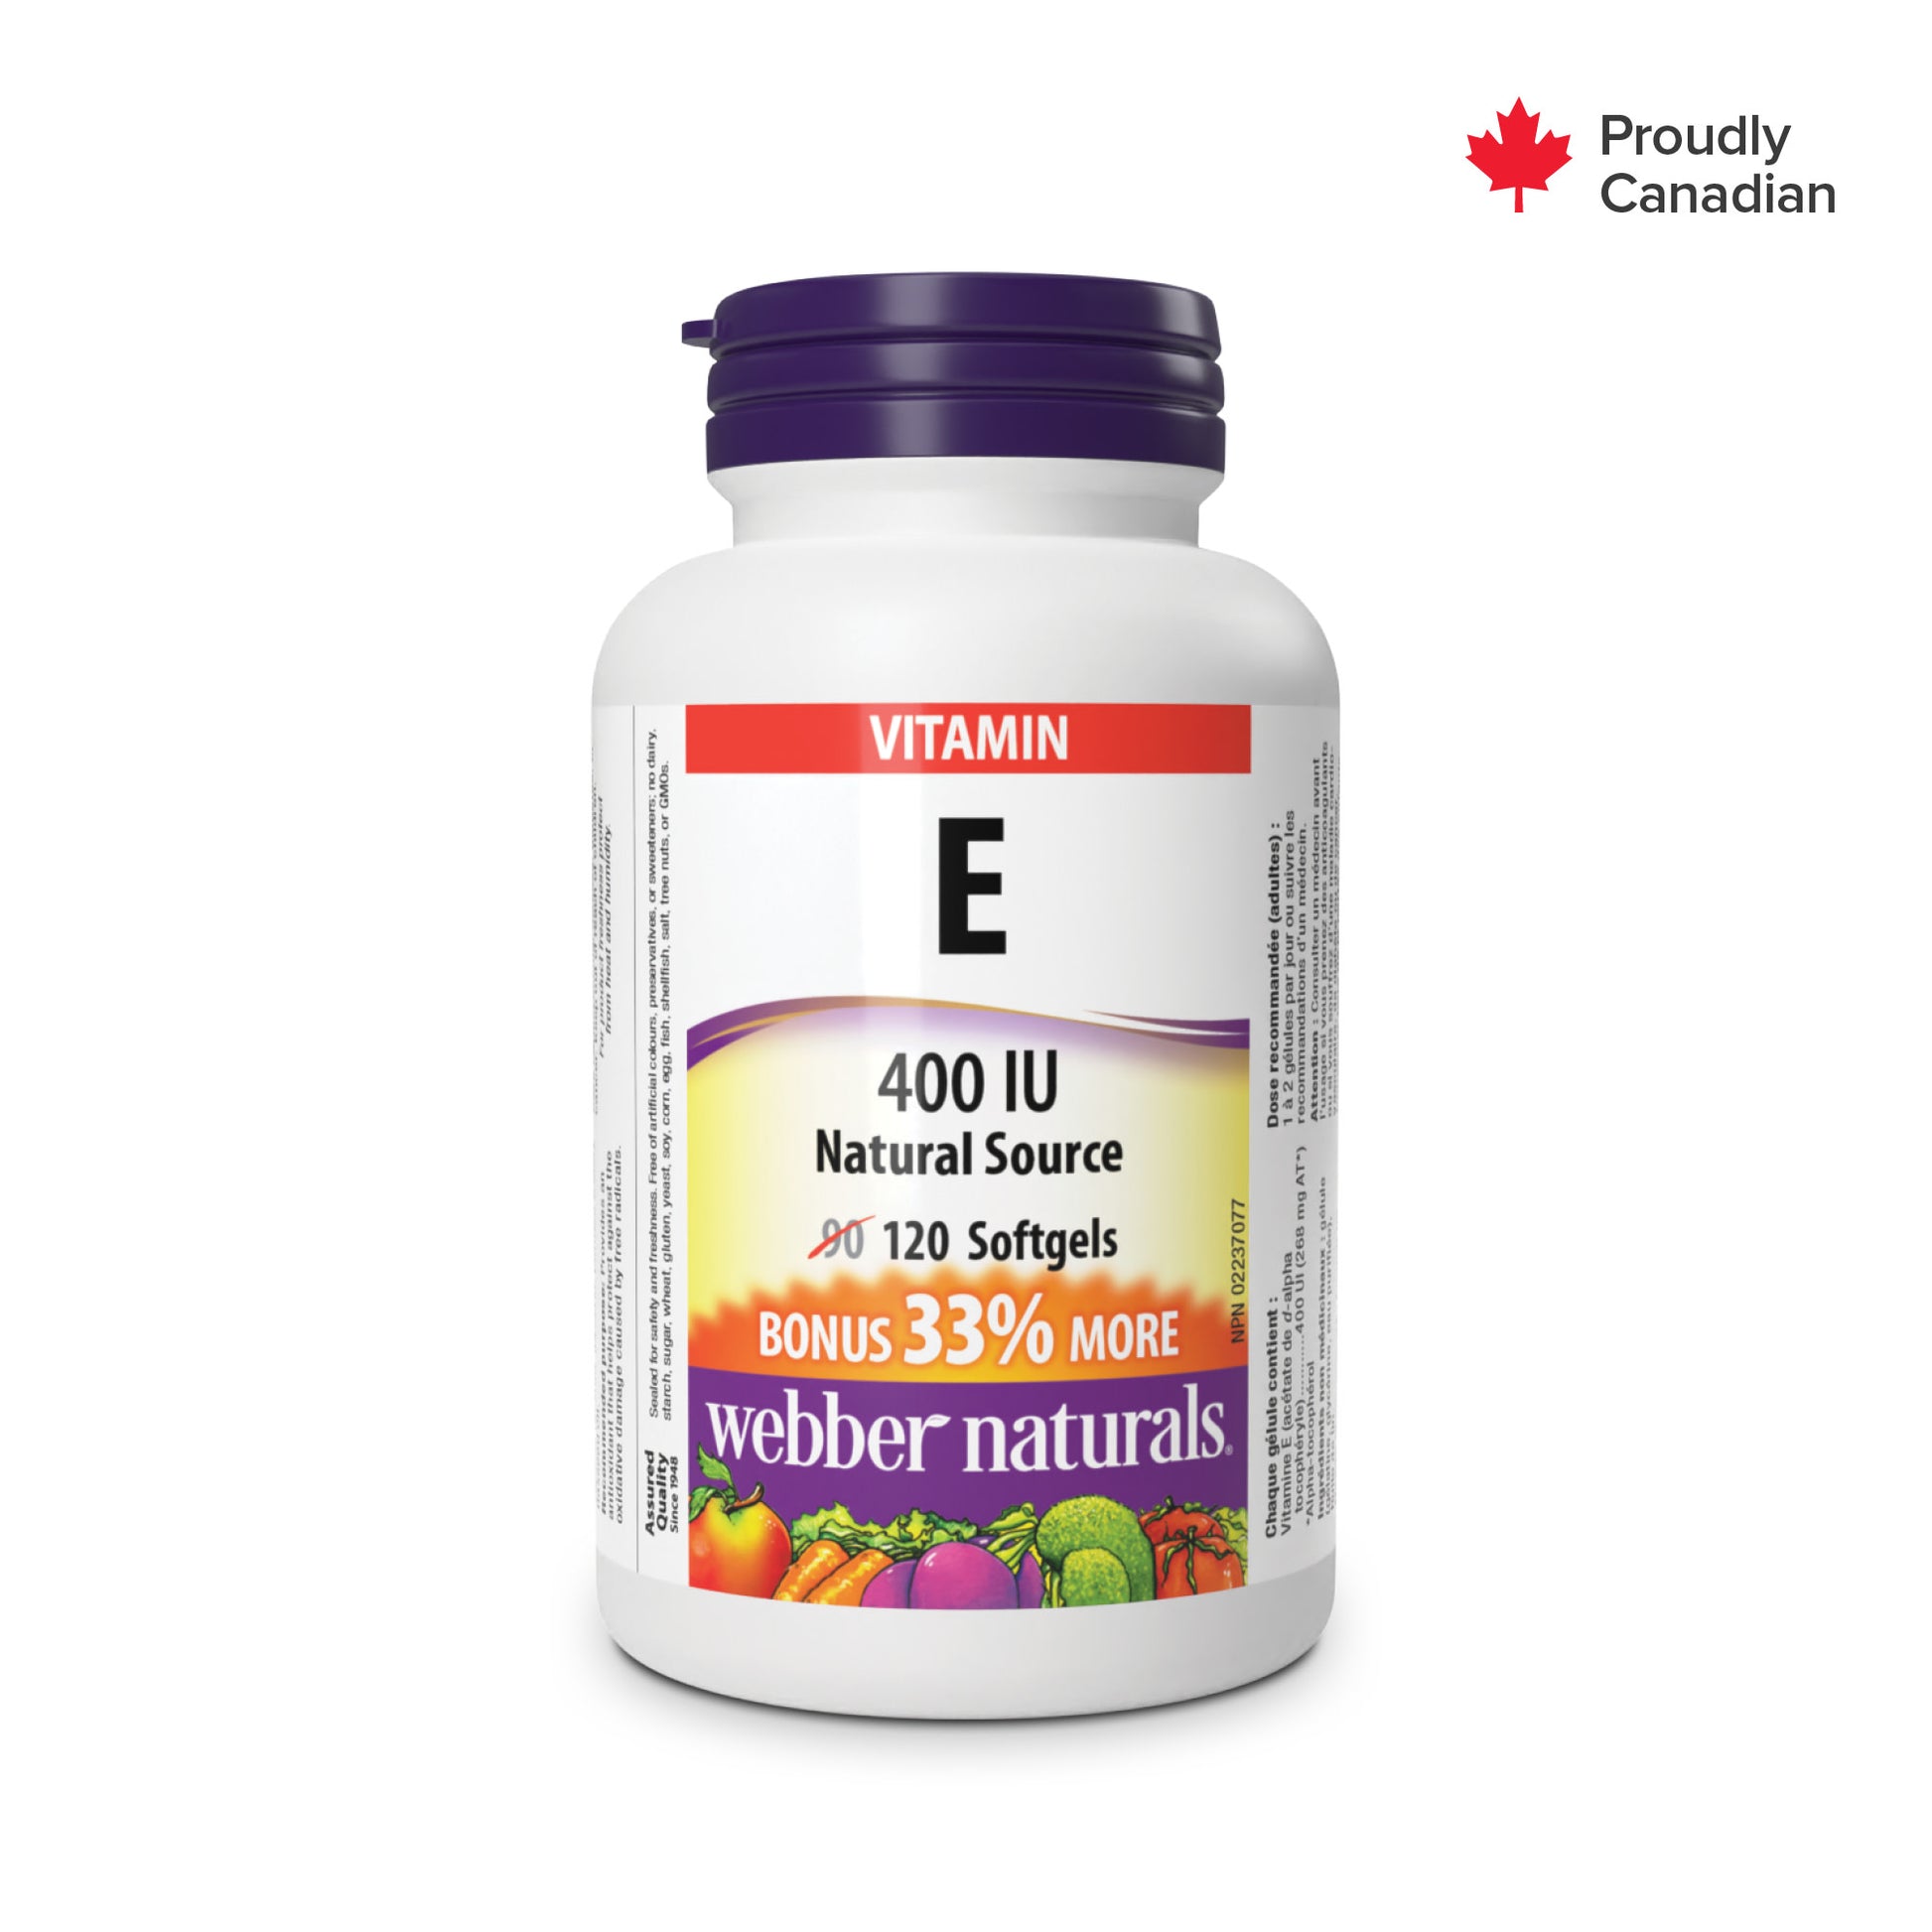 Vitamine E Source naturelle 400 UI for Webber Naturals|v|hi-res|WN3800